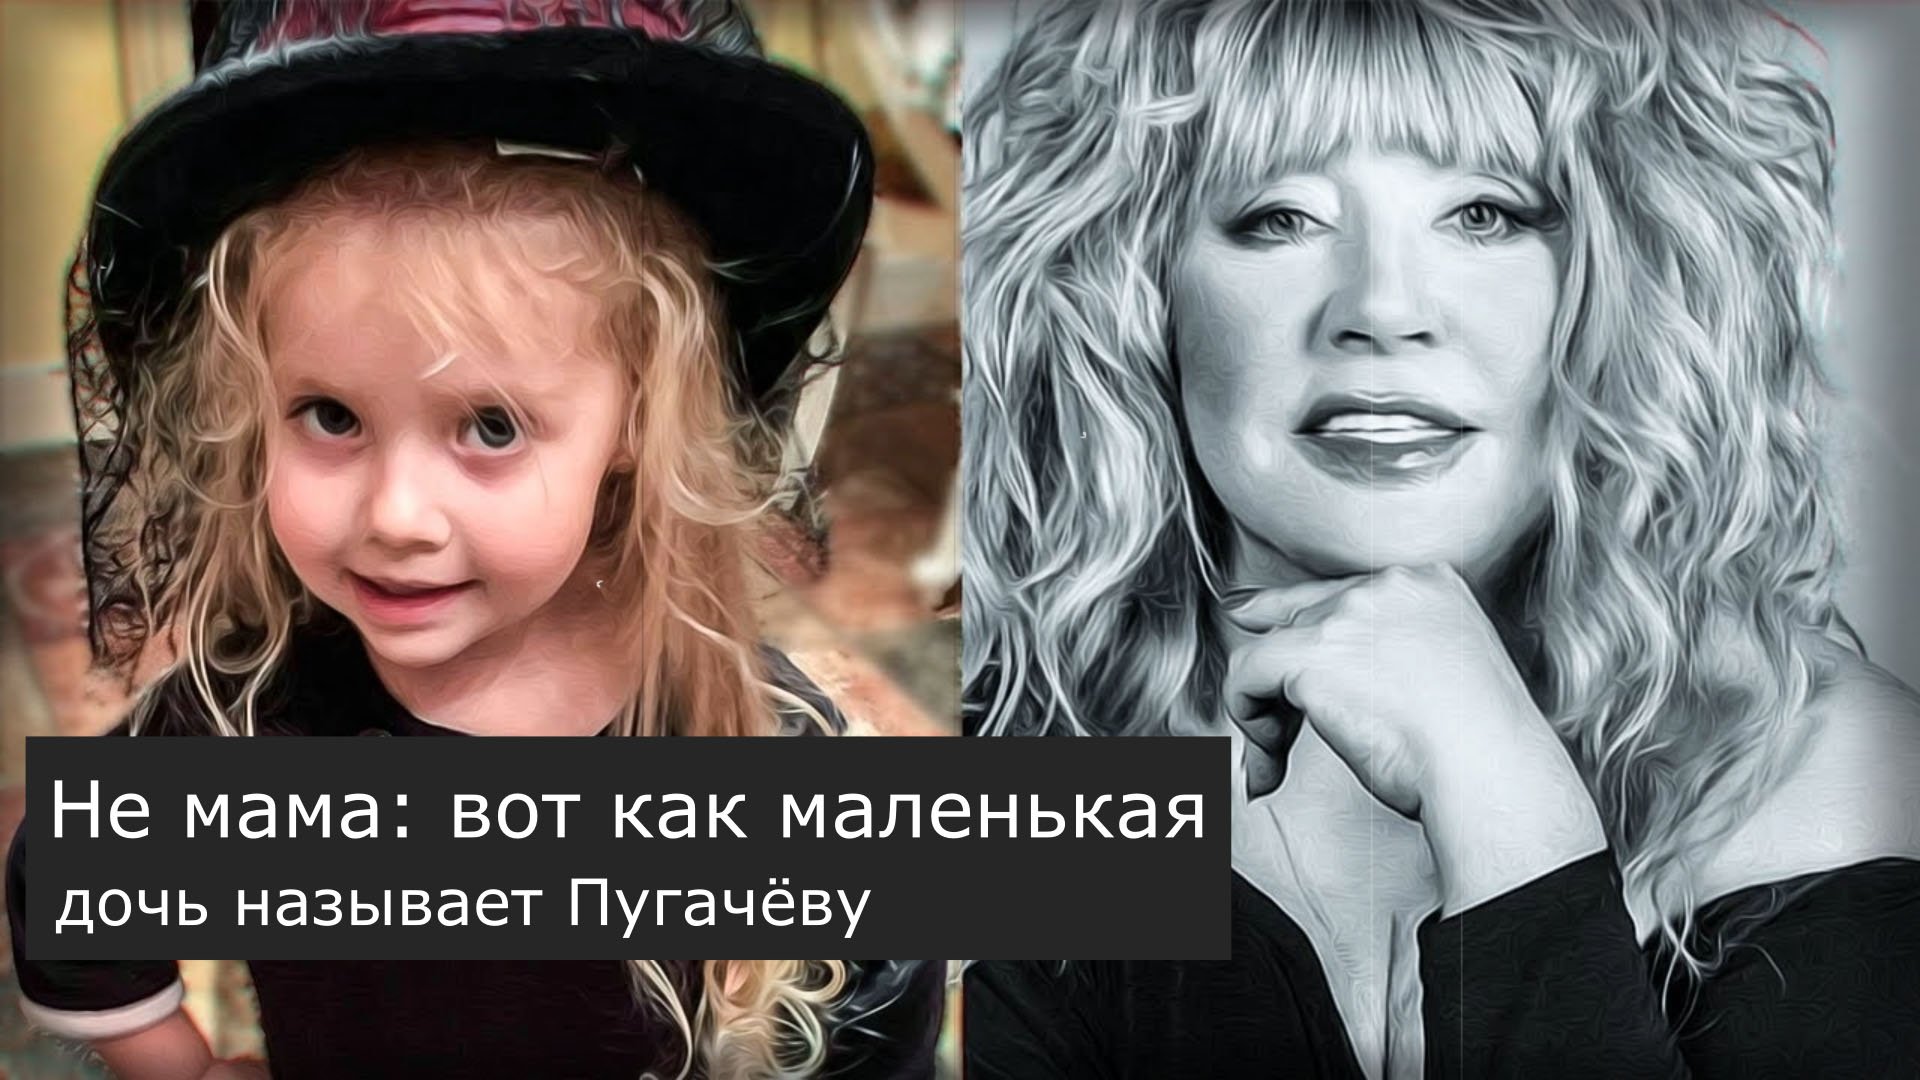 Как зовут дочь ольги. Как маленькая дочь называет Пугачёву. Как дочка зовет Пугачеву. Как называют Пугачеву ее дети.